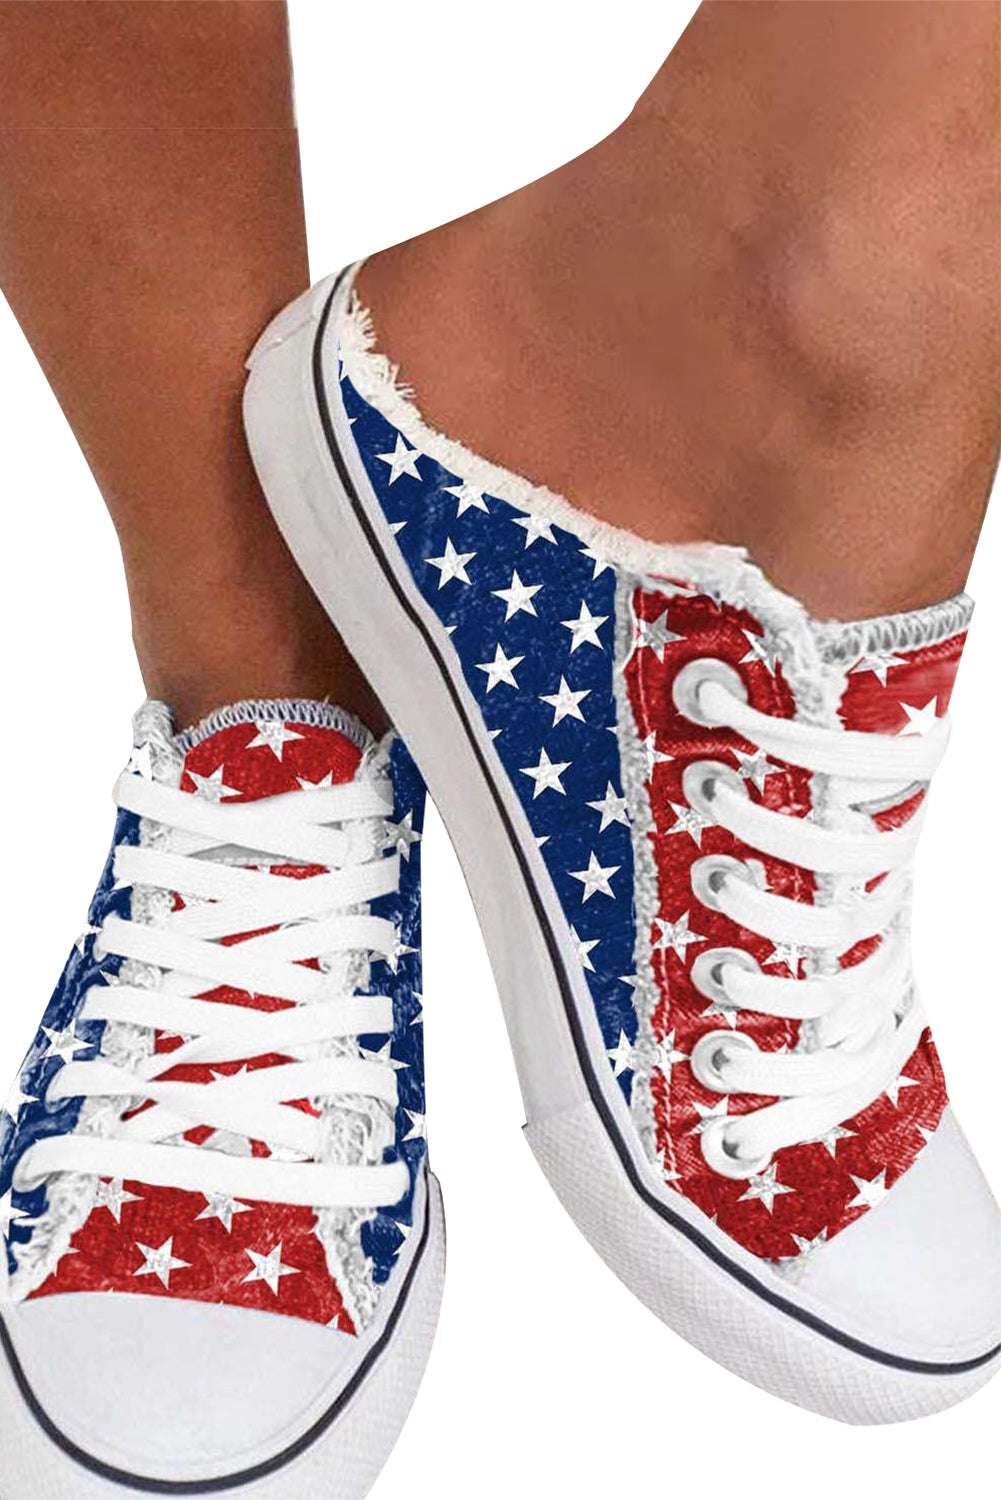 BH022624-3-38, BH022624-3-39, BH022624-3-43, BH022624-3-42, BH022624-3-41, BH022624-3-40, Red Women's The USA Flag Print Canvas Shoes Slip On Sneaker